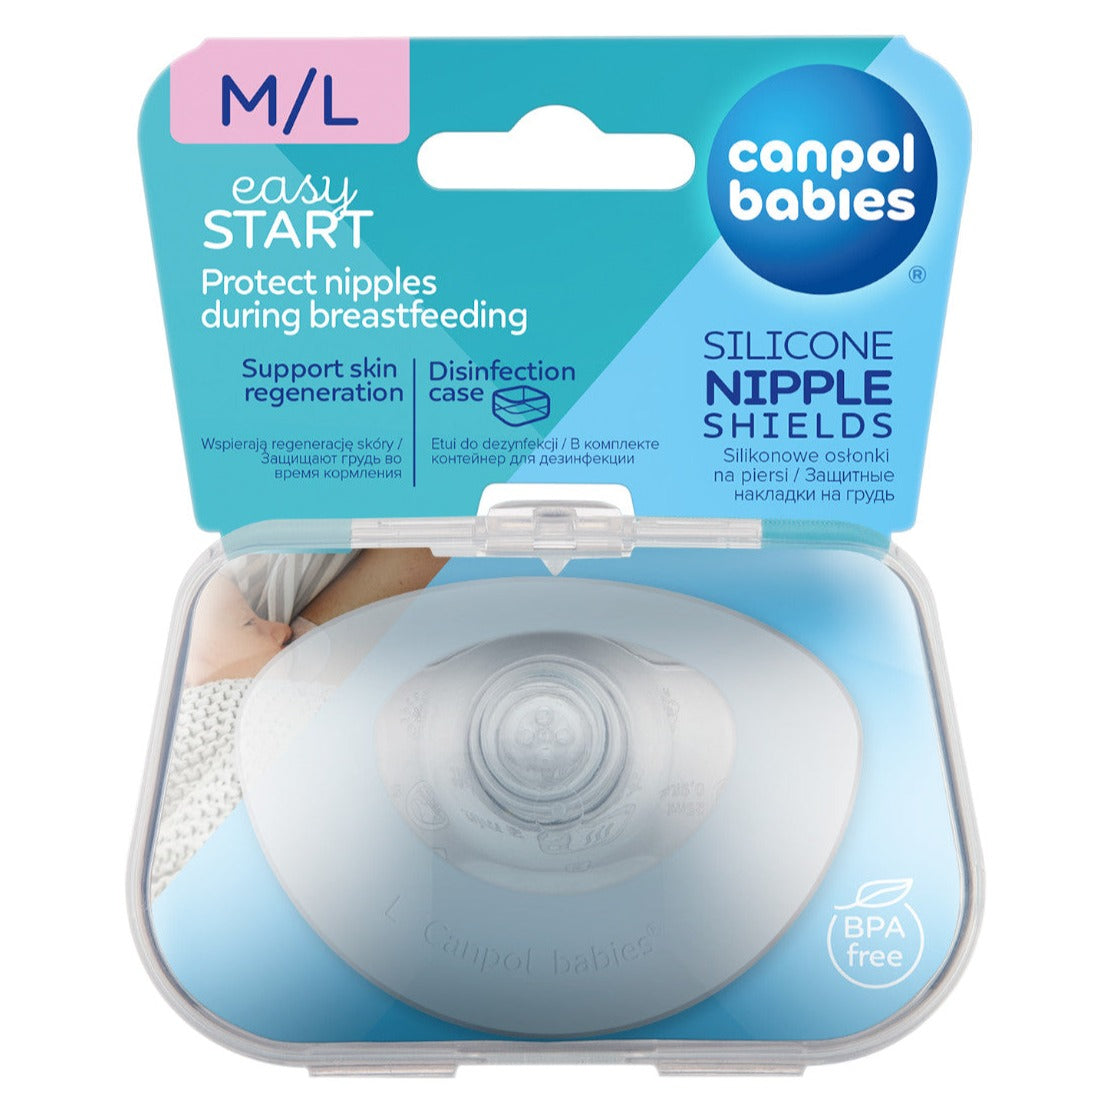 Canpol Babies: EasyStart silikone brystskjolde M/L 2 stk.